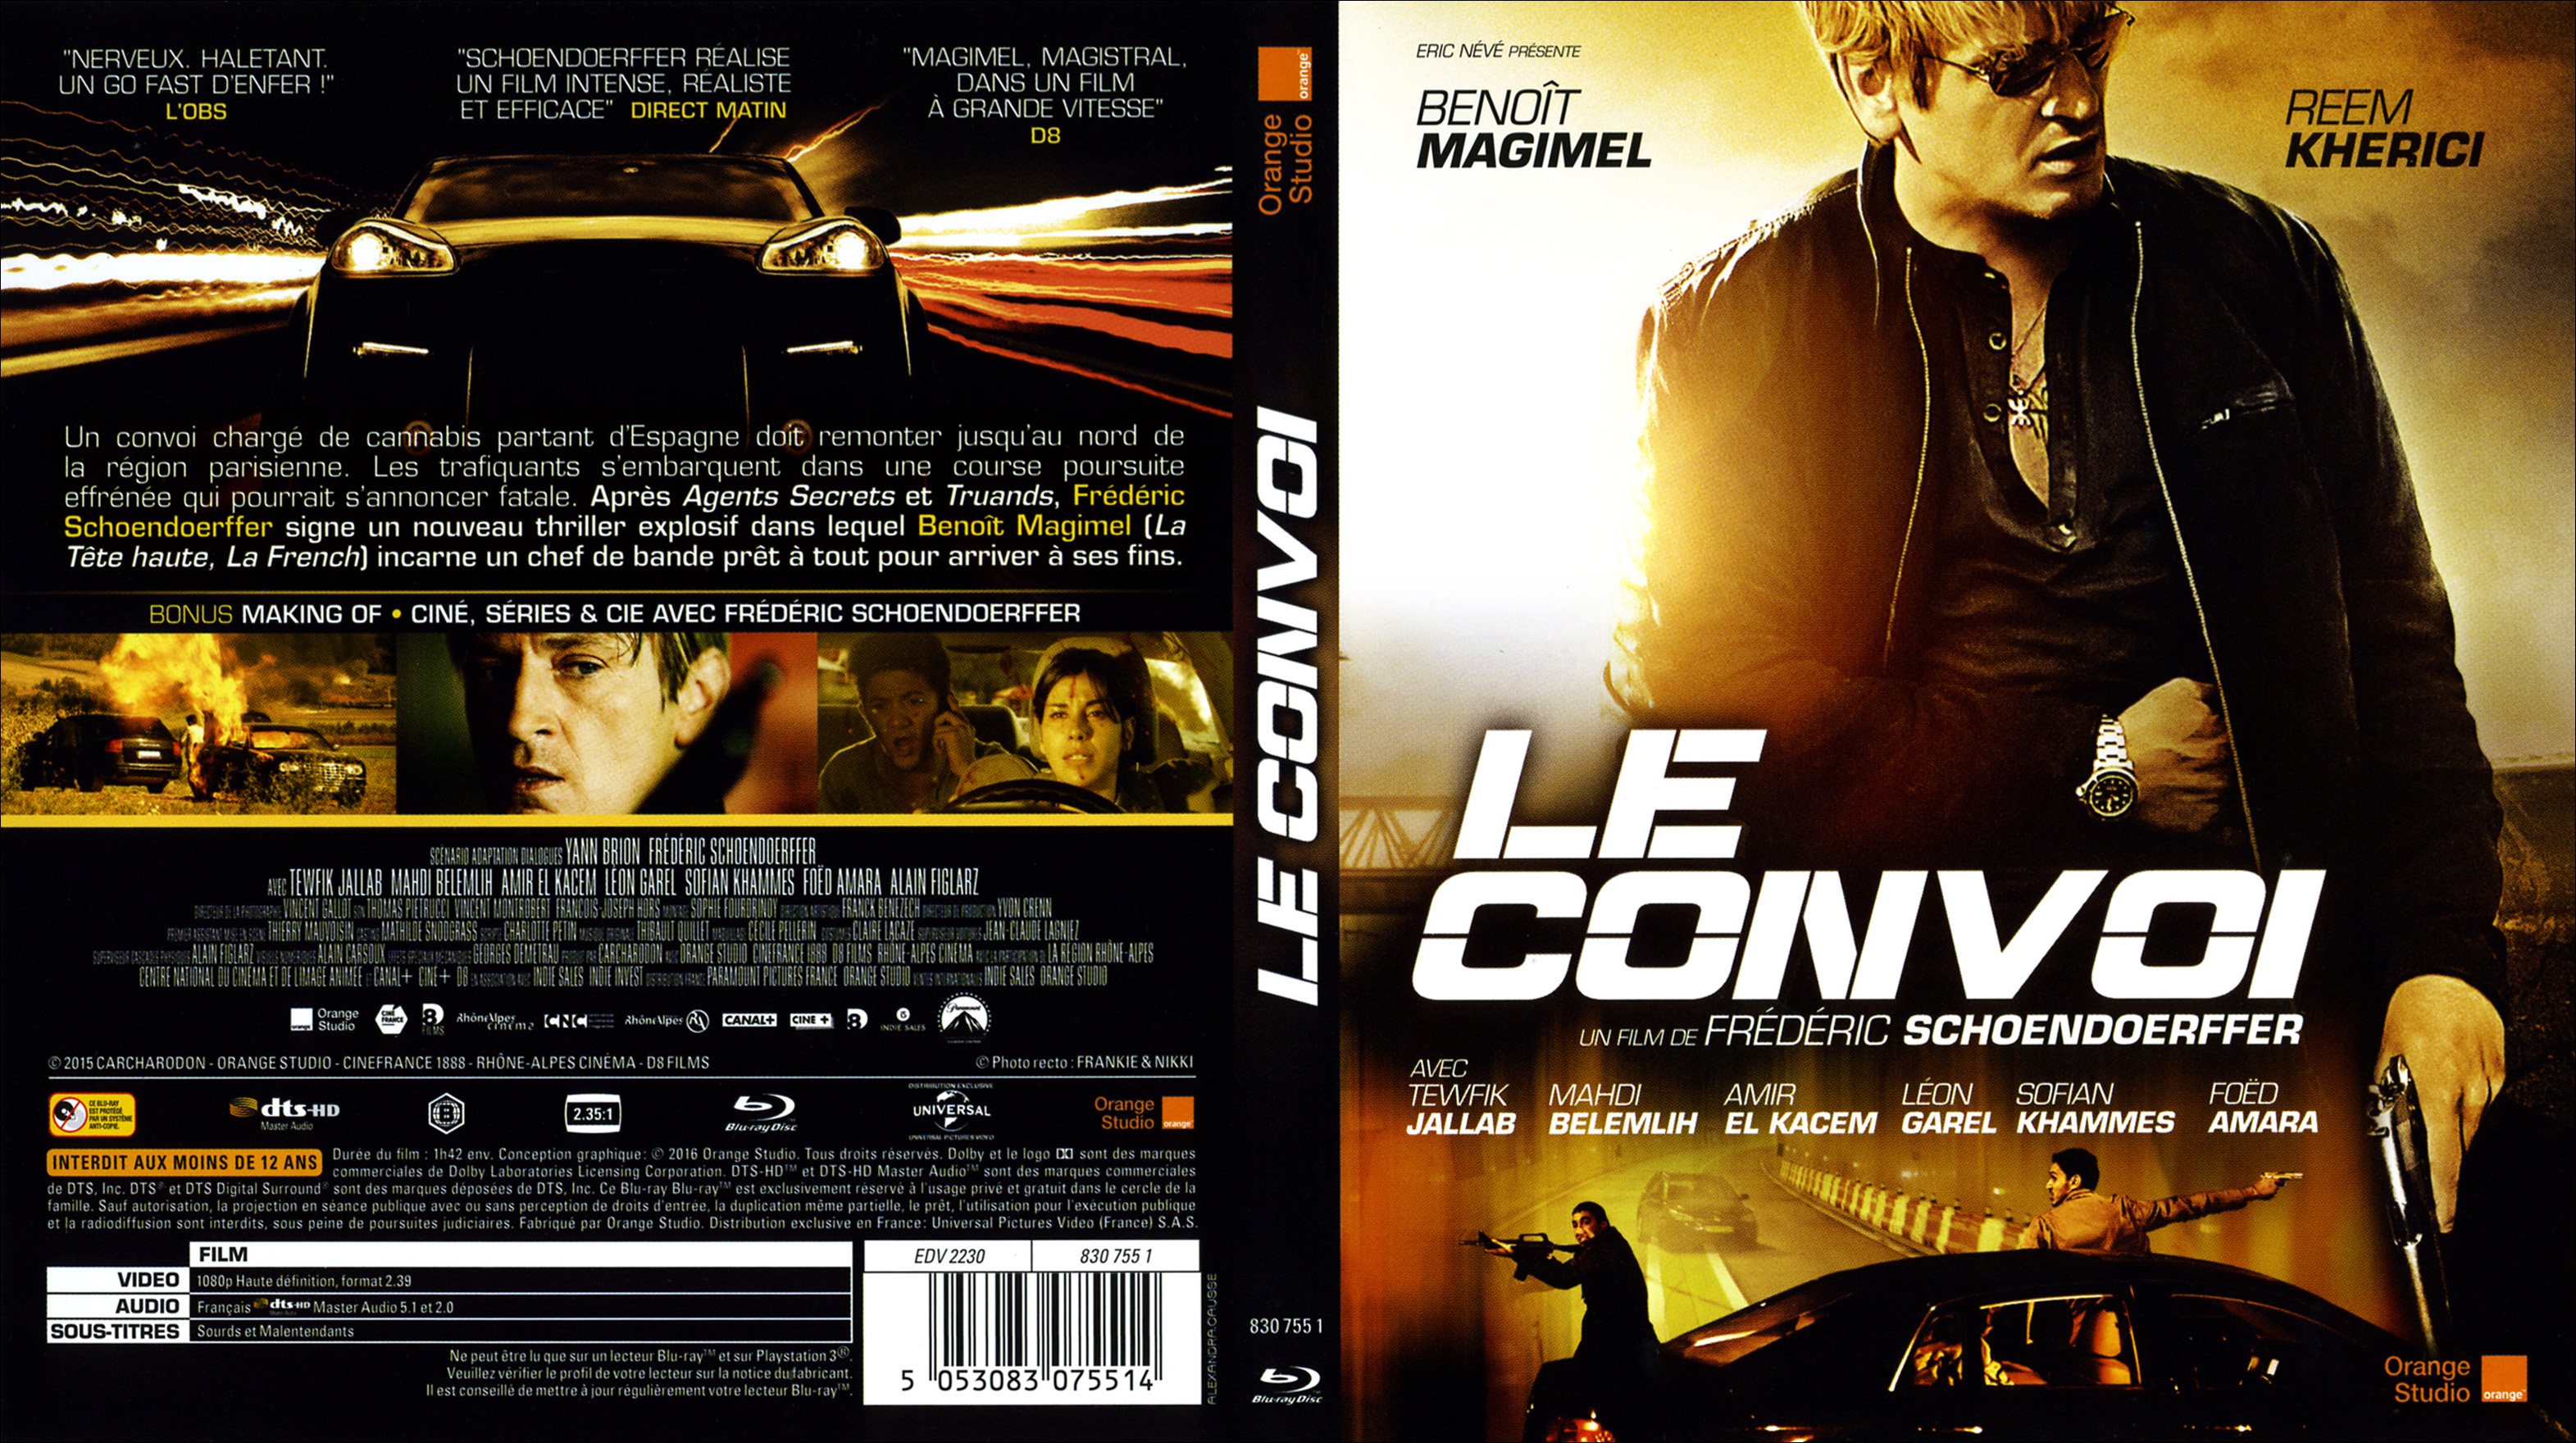 Jaquette DVD Le convoi (2016) (BLU-RAY)